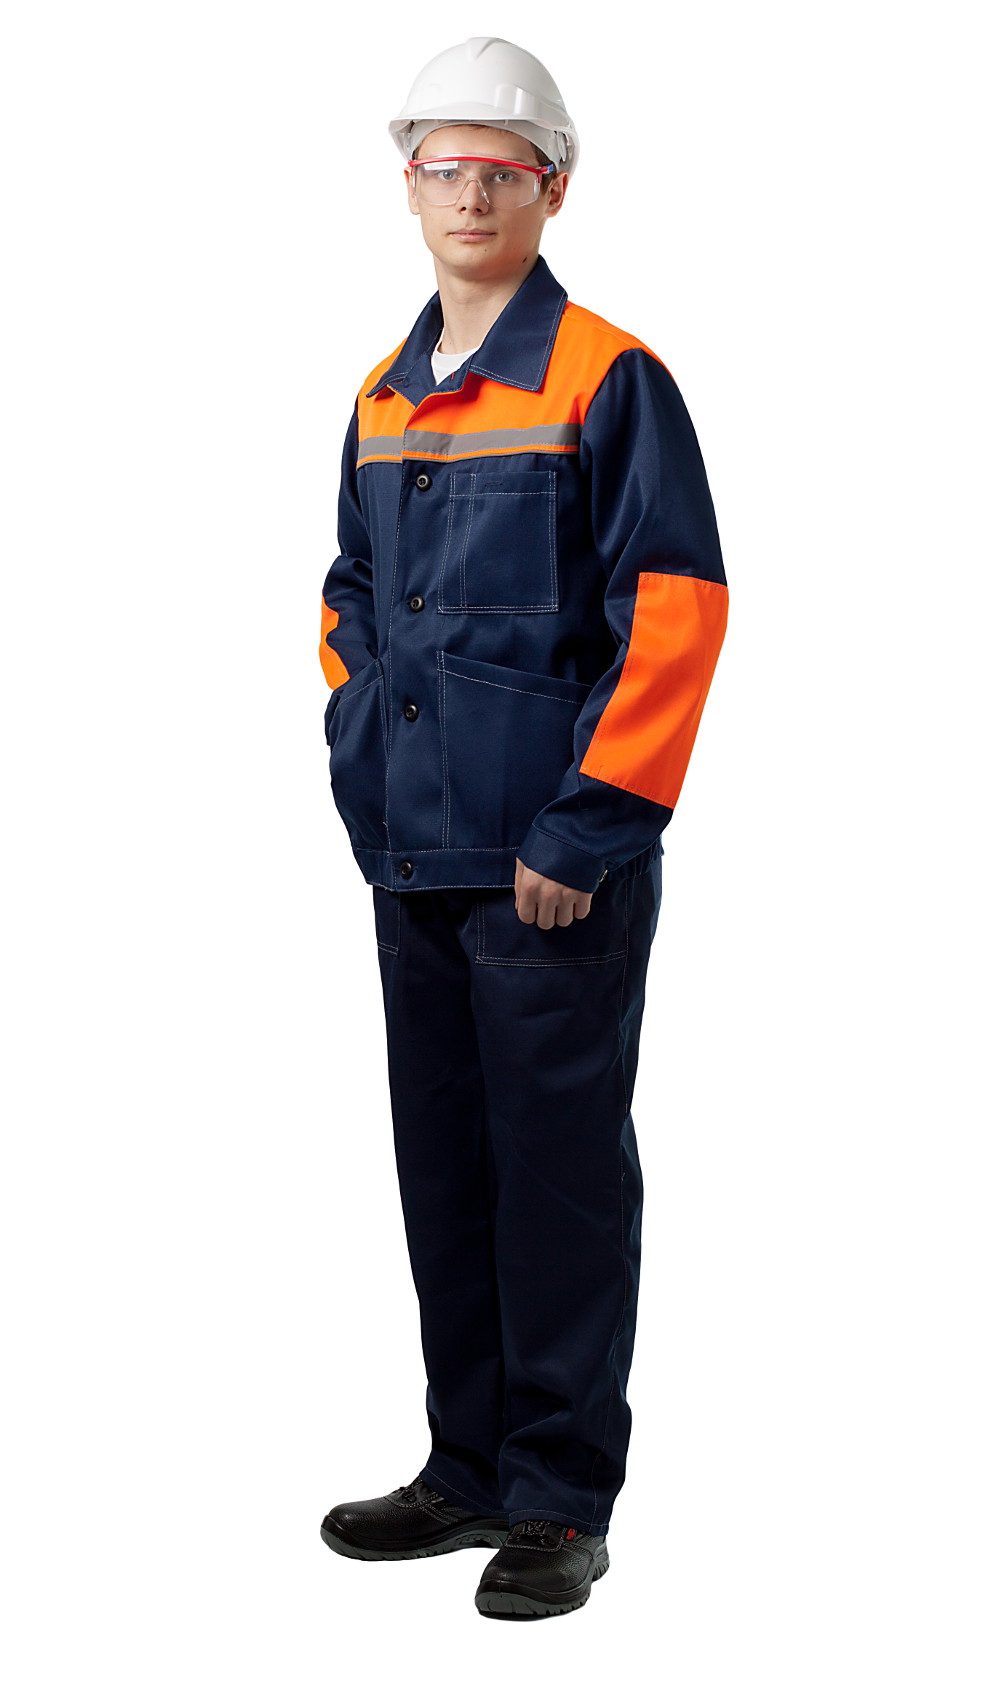 ДНК 109 Костюм «Конвейер» (куртка и полукомбинезон), цвет синий + оранжевый от интернет магазина dnk-specodegda.ru, приобрести днк 109 костюм «конвейер» (куртка и полукомбинезон), цвет синий + оранжевый. Фото №2